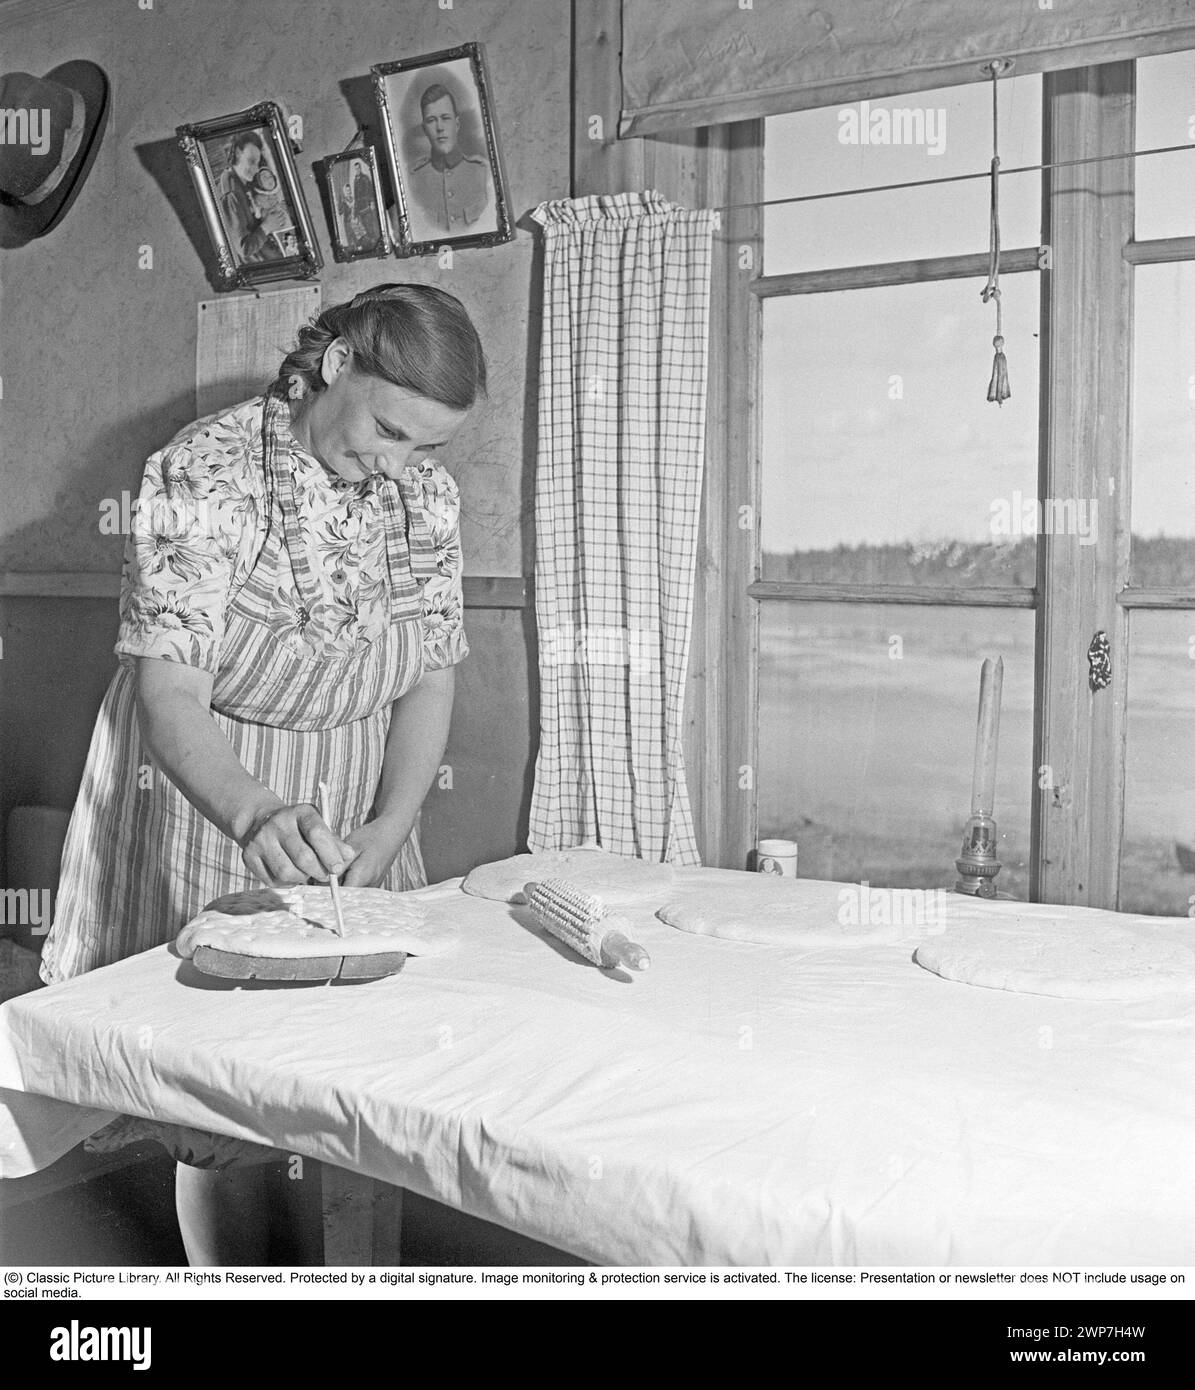 Cuisson du pain 1949. Intérieur d'une cuisine avec une femme qui cuit du pain. Elle prépare la pâte avant de la mettre au four. Une cuisine rurale en Laponie Suède 1949. Kristoffersson réf. AS83-4 Banque D'Images